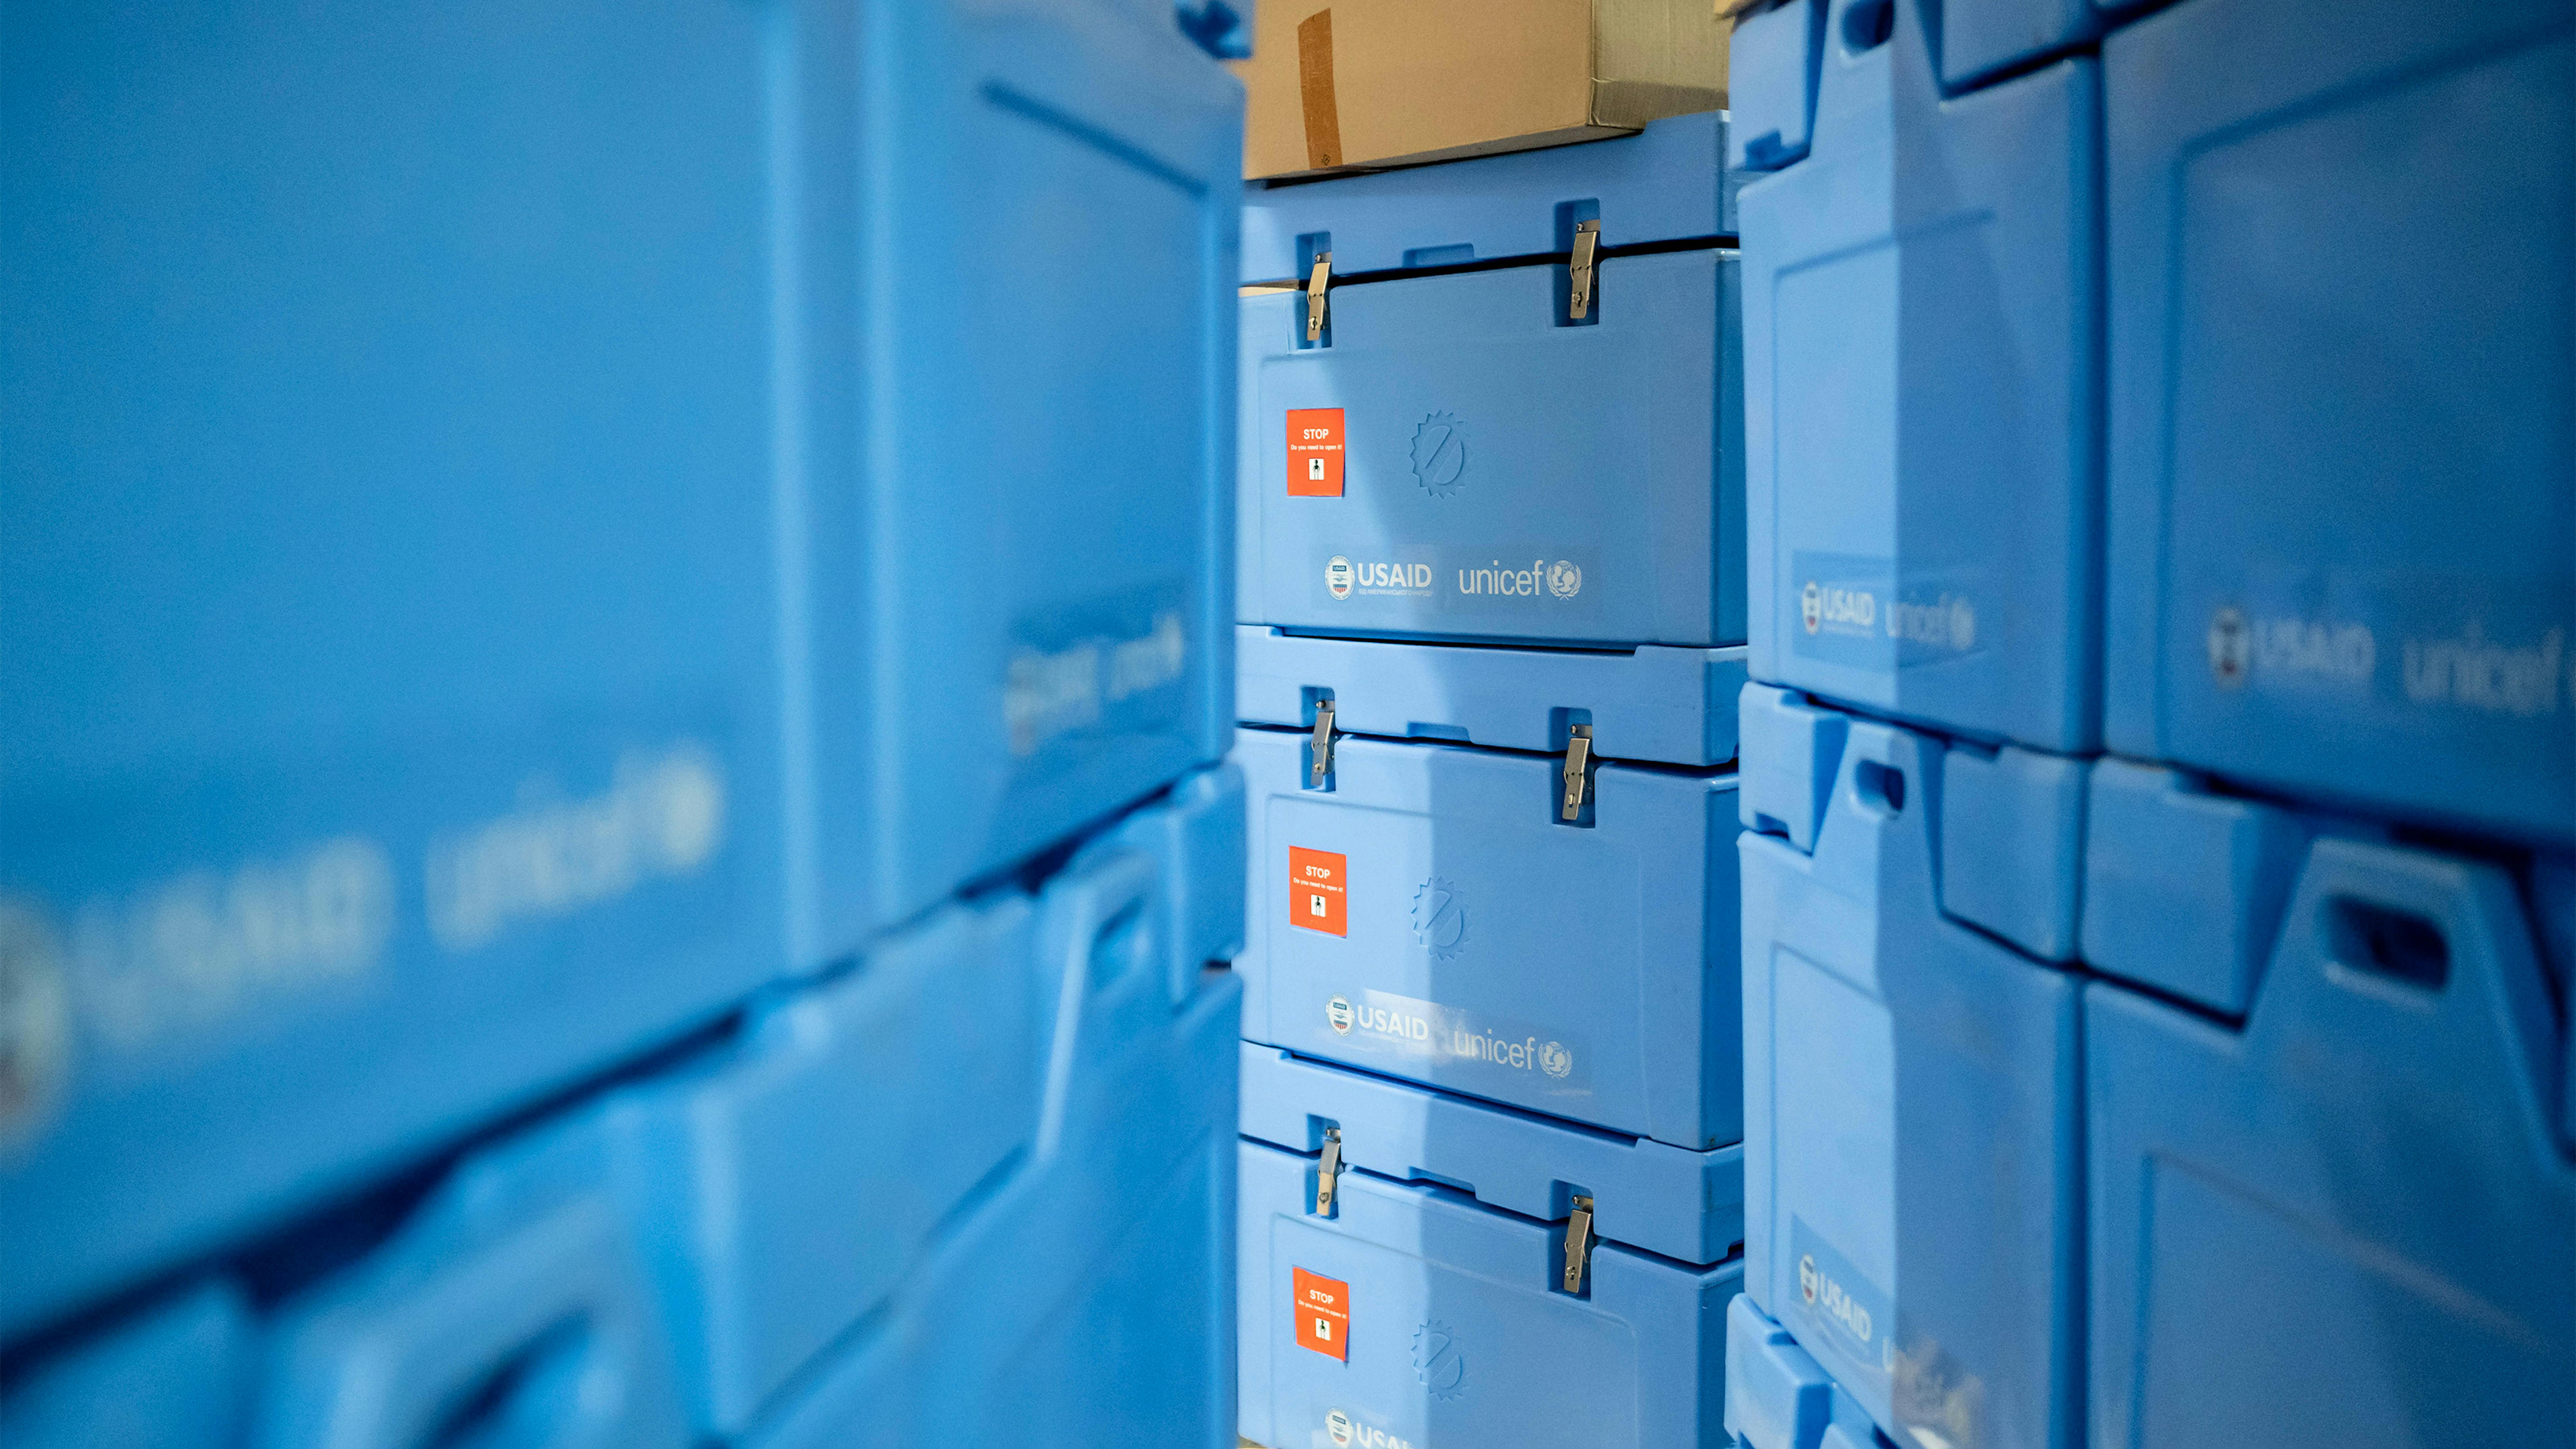 L'UNICEF e l'USAID hanno consegnato contenitori frigo per supportare i siti di vaccinazione in tutta l'Ucraina